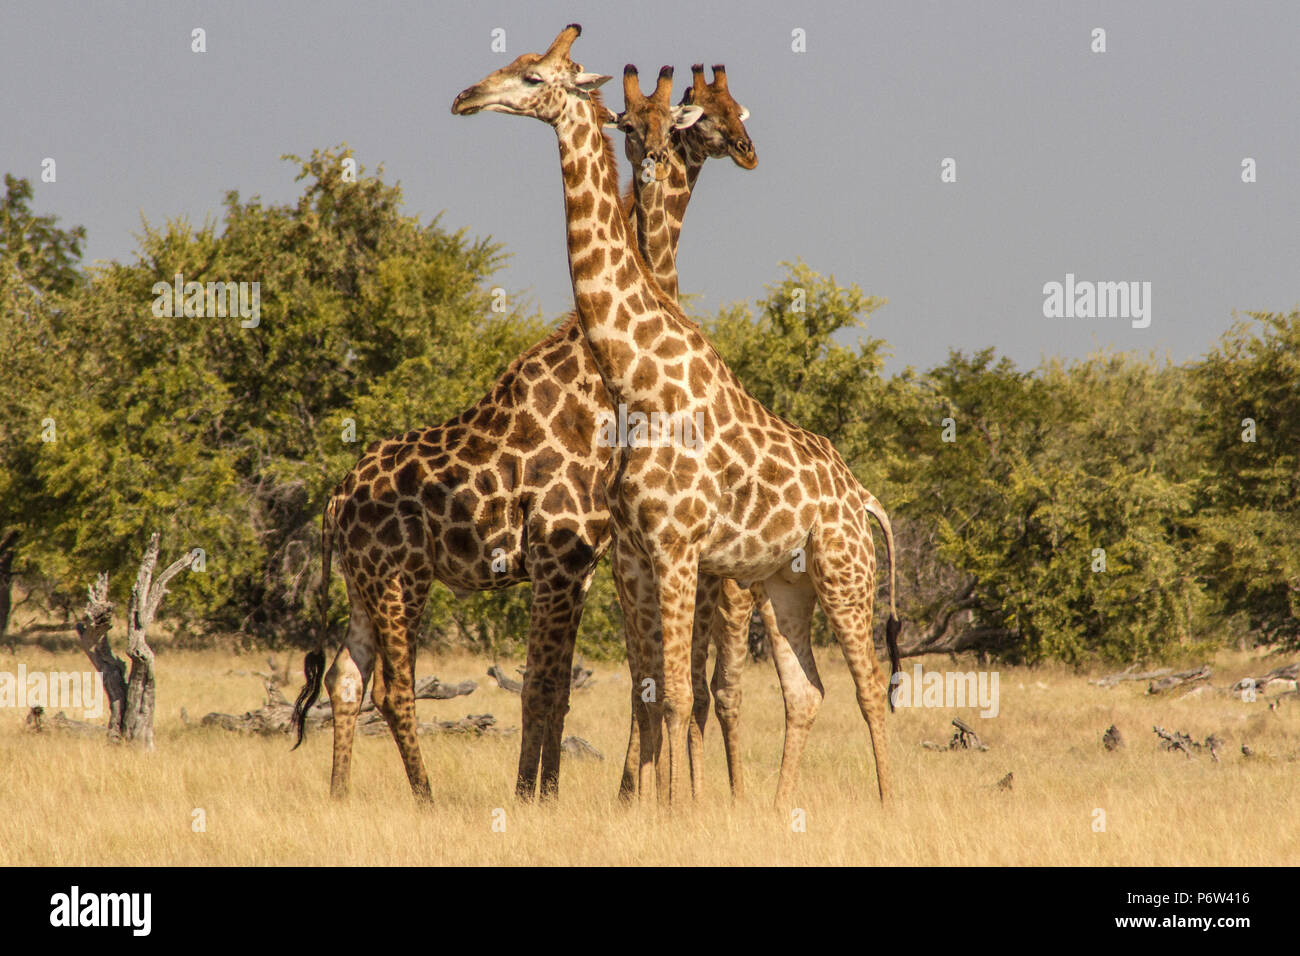 Trois angolais ou namibienne girafes Giraffa - Cameloparalis Angolensis - impliqué dans un rituel de parade nuptiale dans Etosha, Namibie. Trois chefs ensemble. Banque D'Images